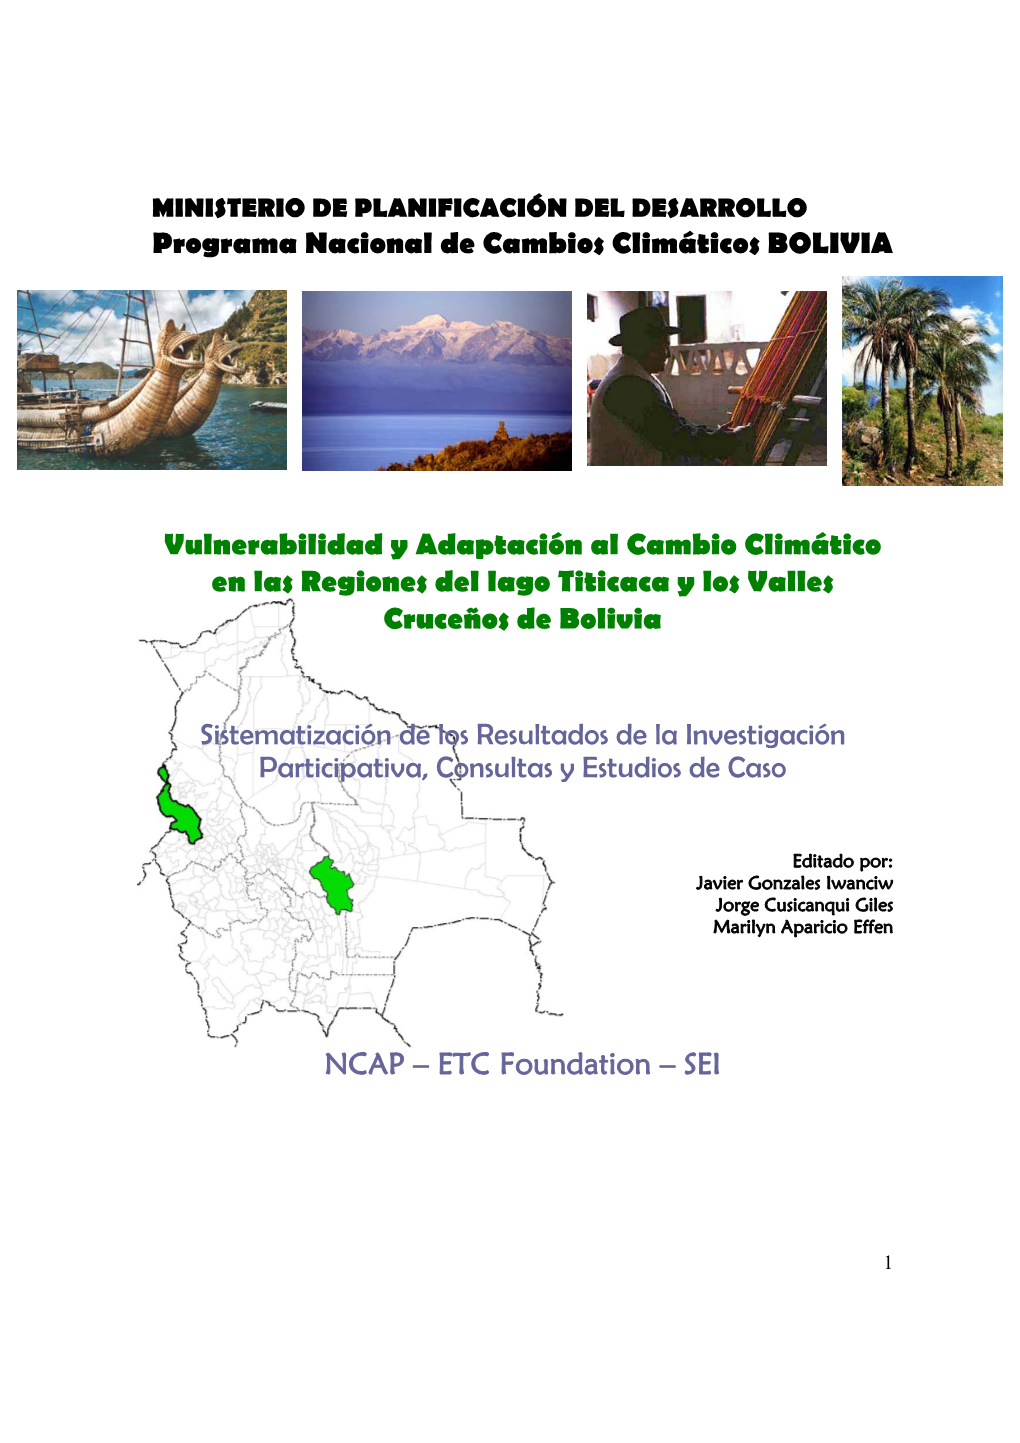 Vulnerabilidad Y Adaptación Al Cambio Climático En Las Regiones Del Lago Titicaca Y Los Valles Cruceños De Bolivia